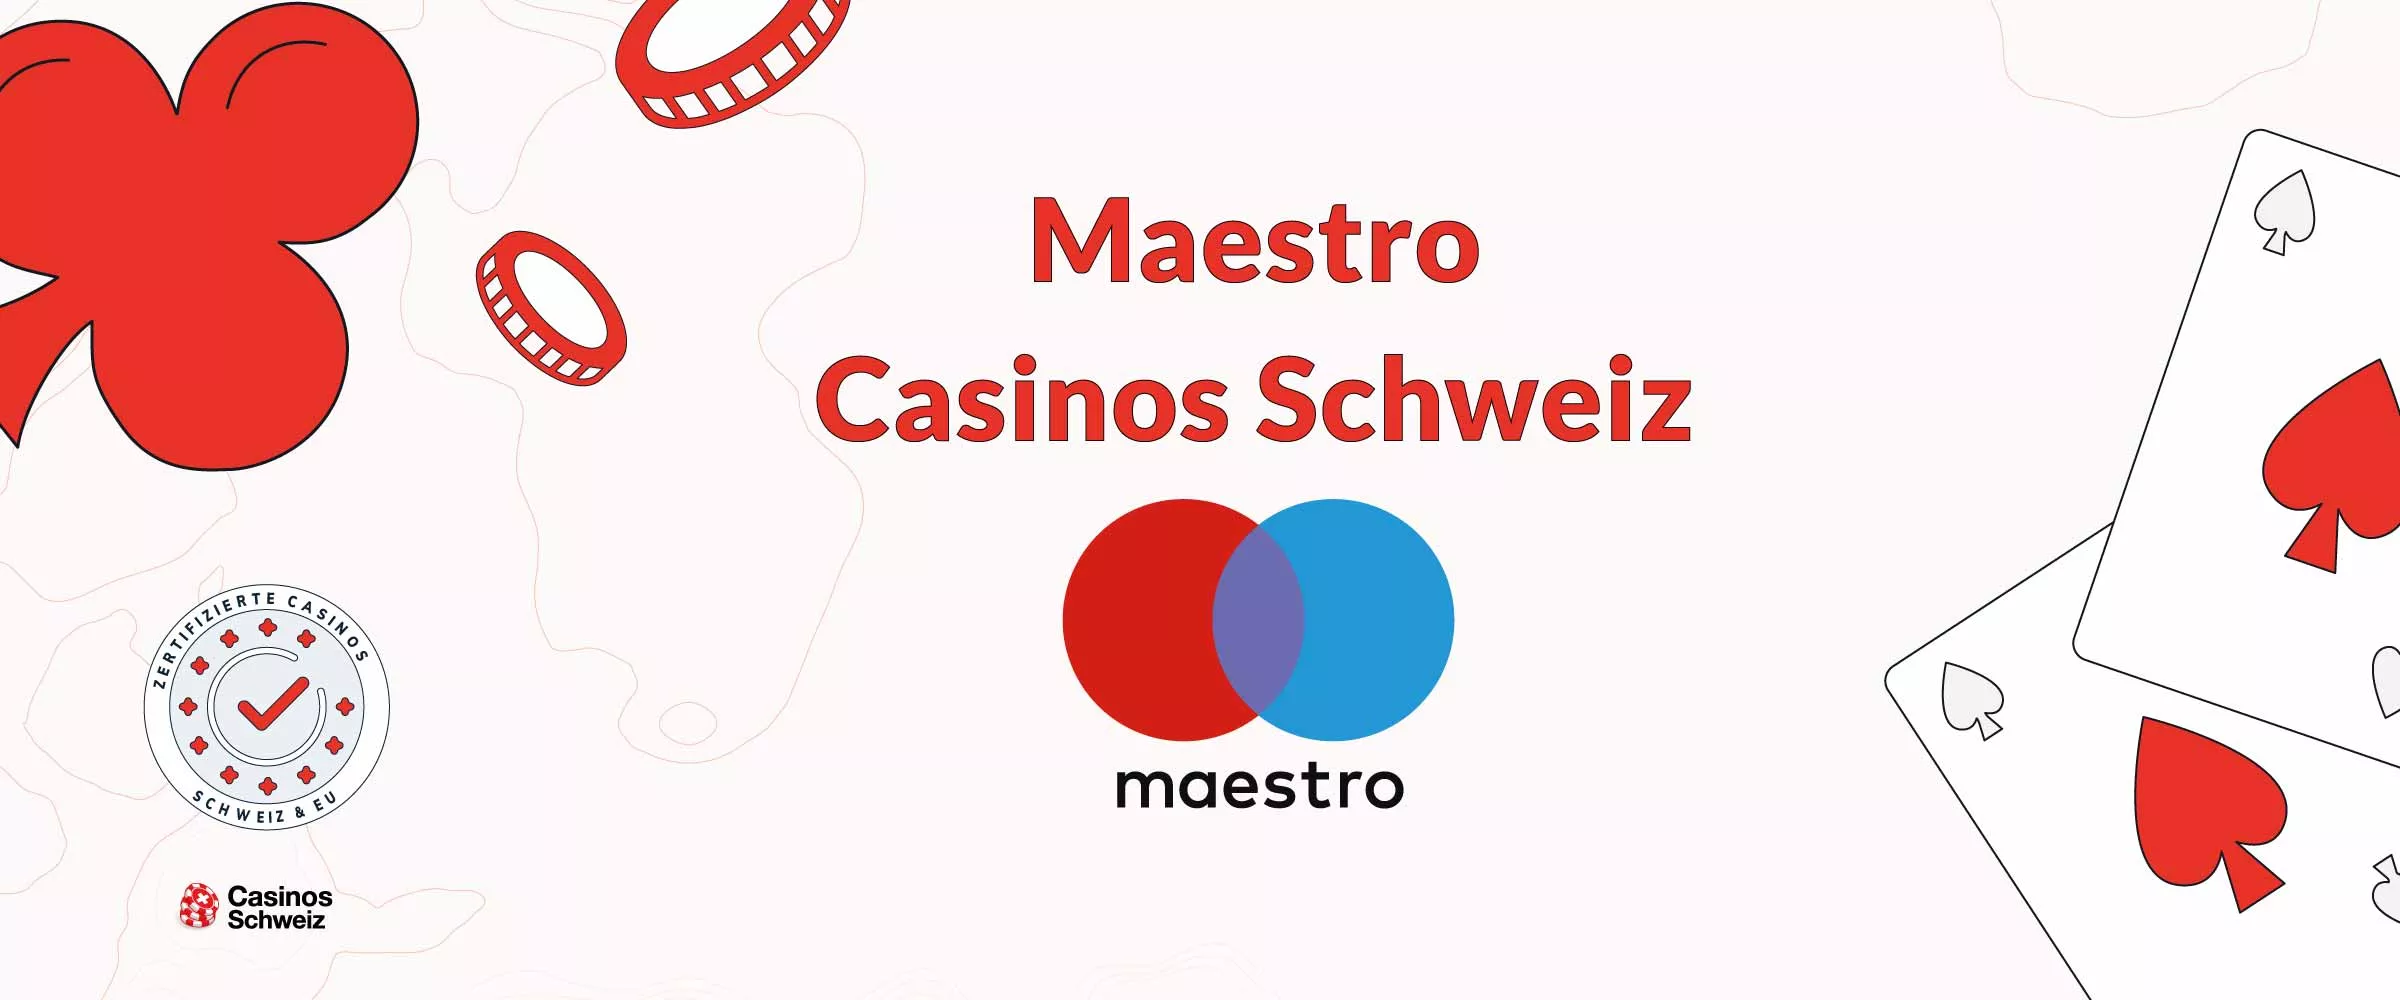 Maestro Casinos Schweiz